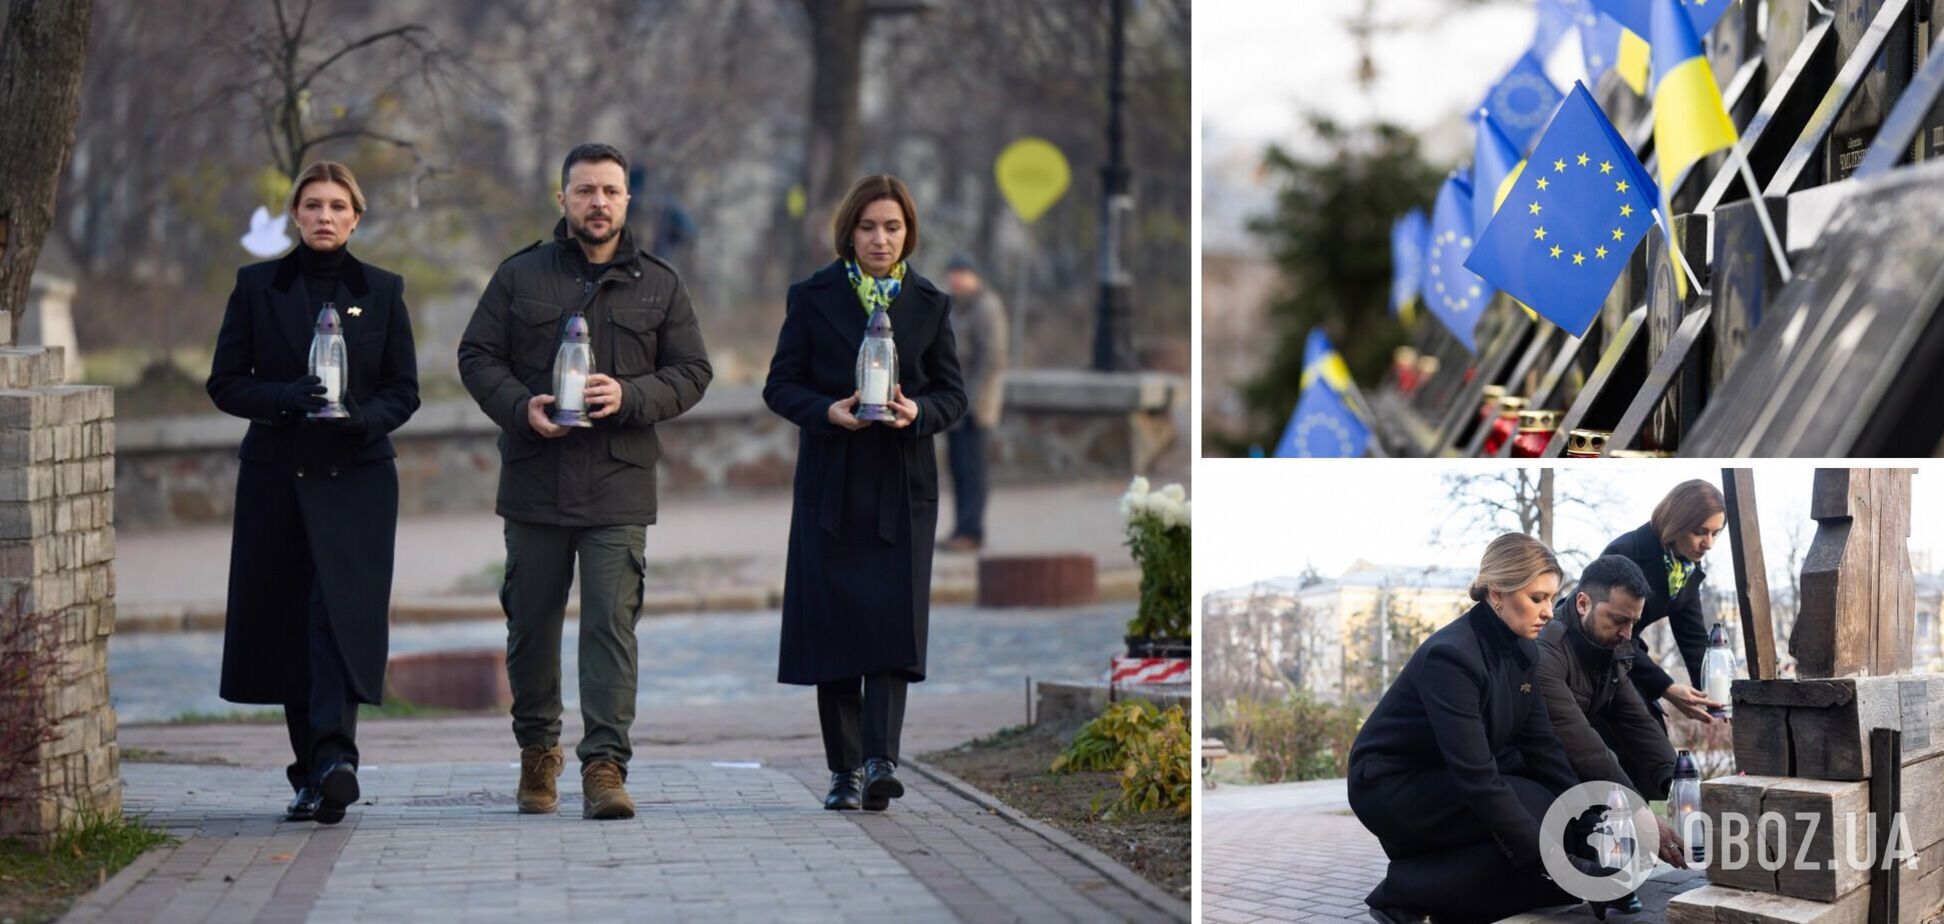 Президент Молдовы приехала в Киев: вместе с Зеленским и его женой они почтили память погибших во время Революции Достоинства. Фото